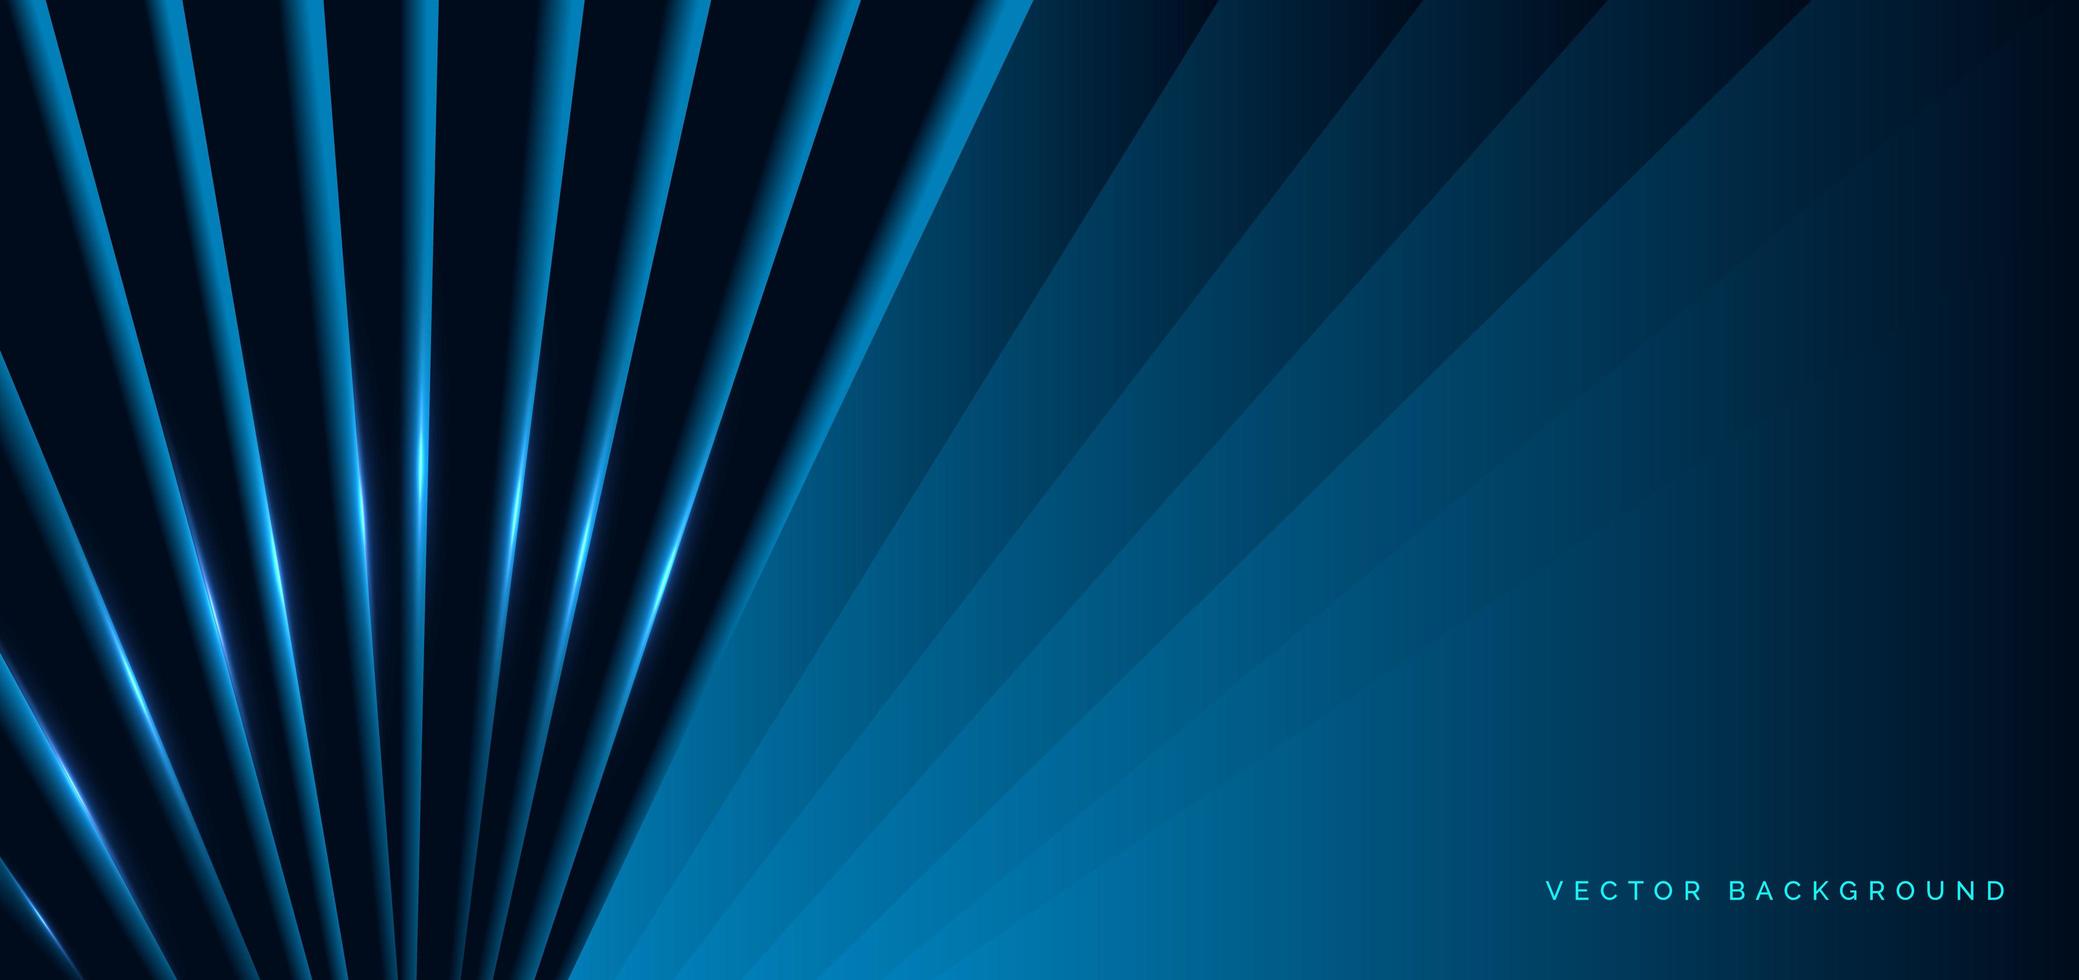 formes diagonales bleu foncé avec effet de lumière bleue vecteur